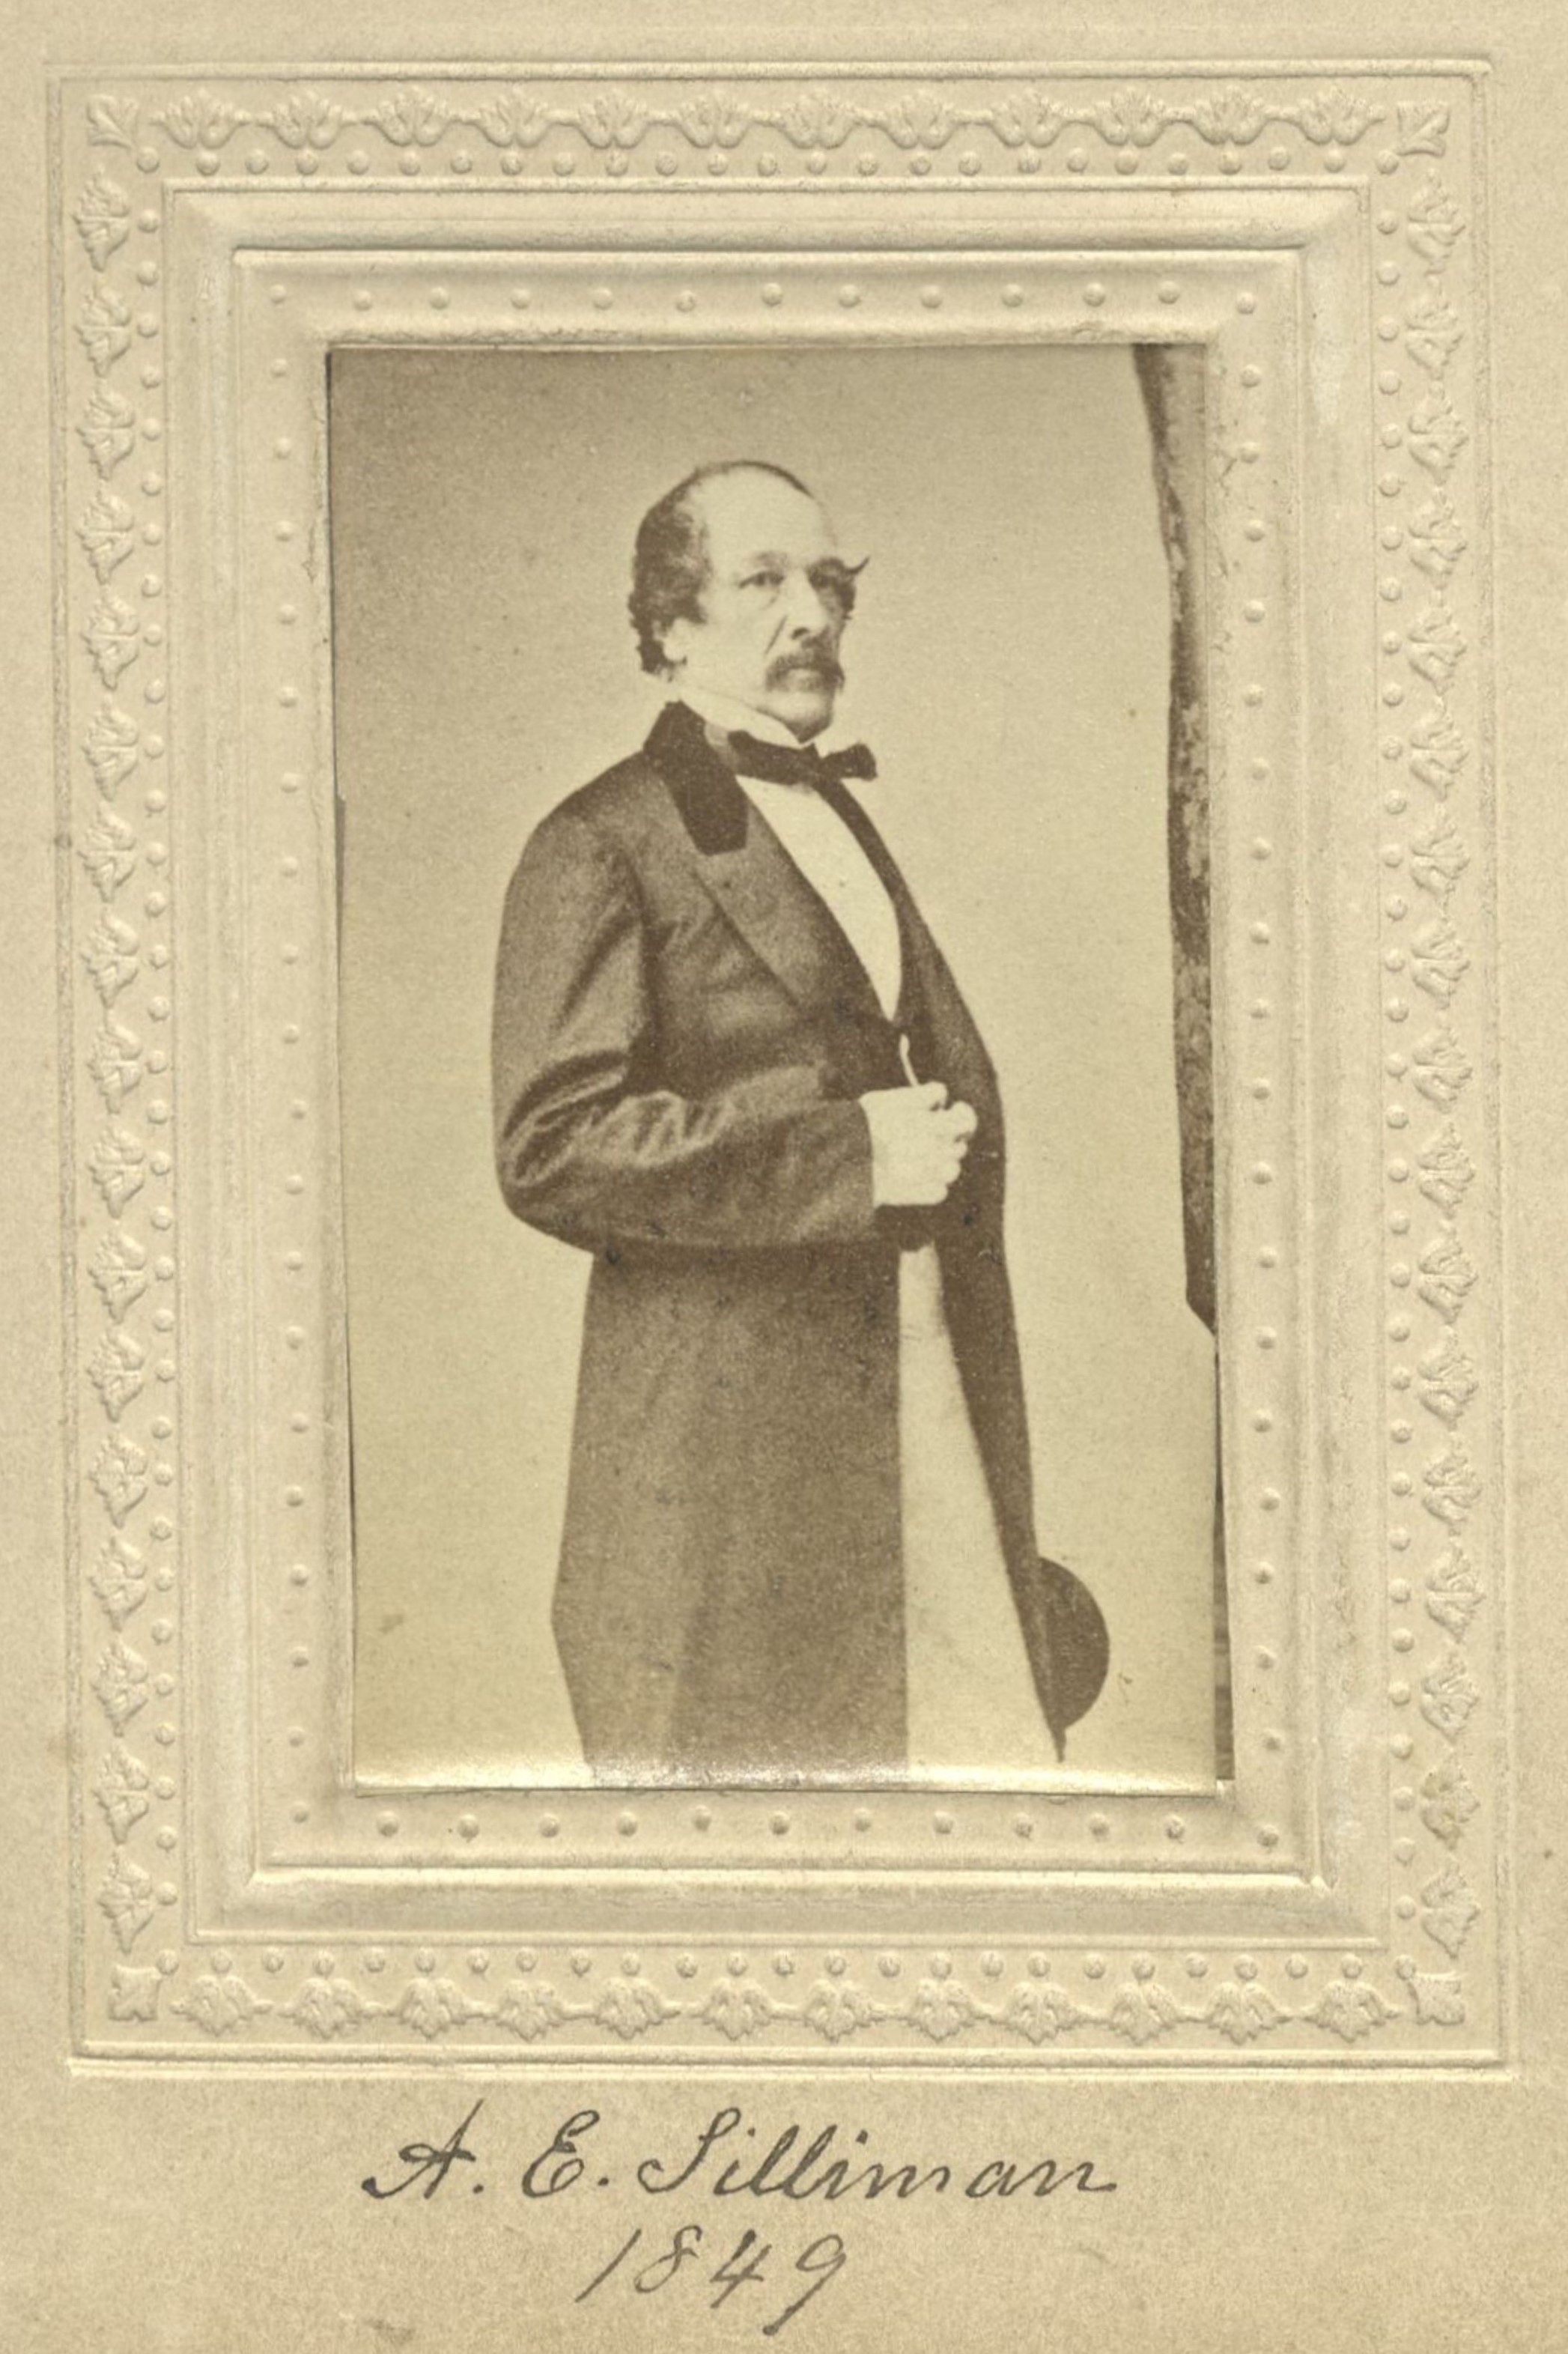 Member portrait of Augustus E. Silliman